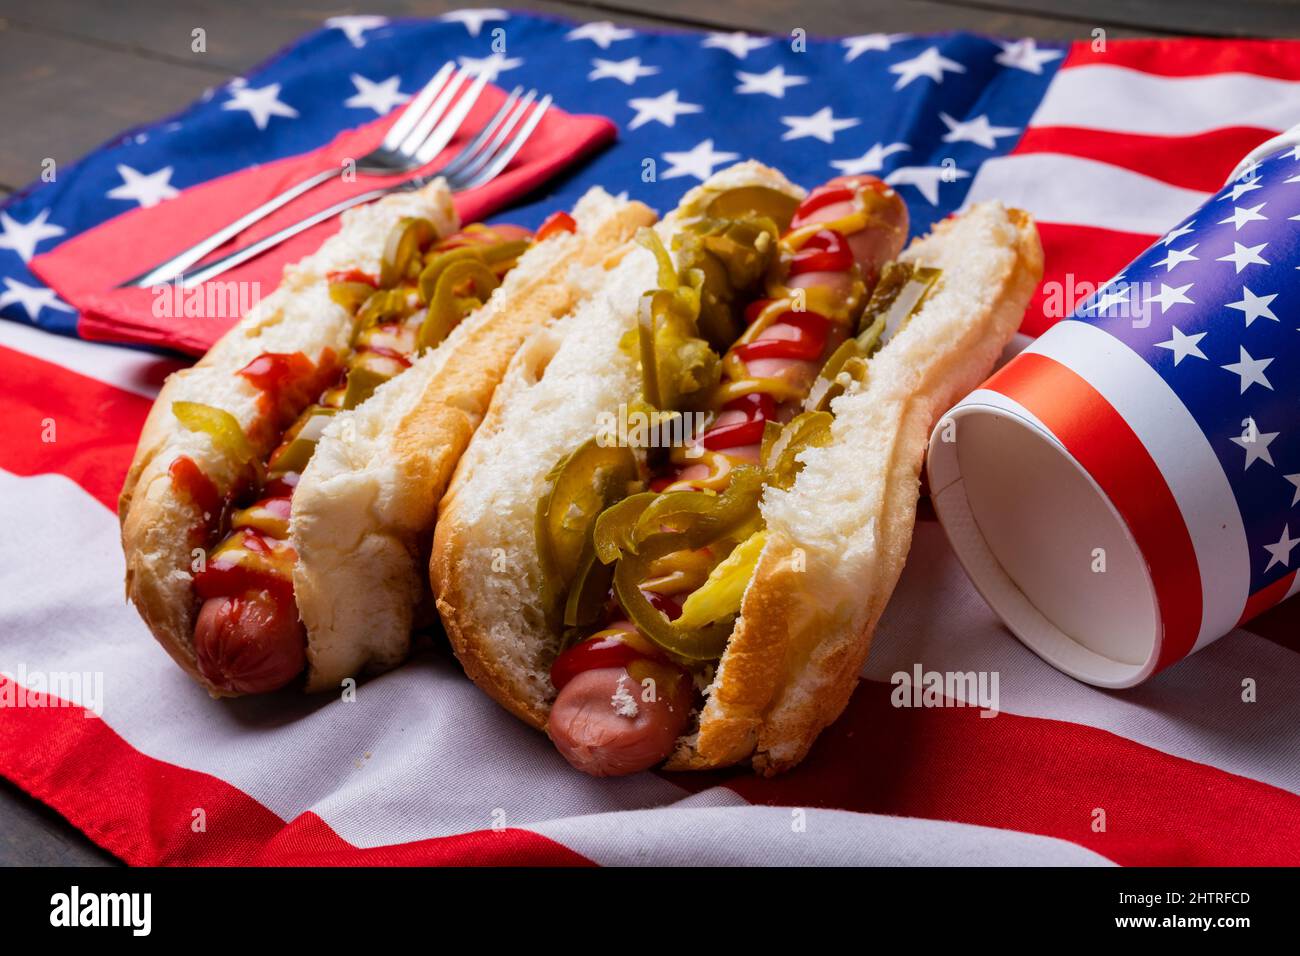 Nahaufnahme von Hot Dogs mit Jalapeno serviert auf amerikanischer Flagge mit Gabel und Einwegbecher Stockfoto